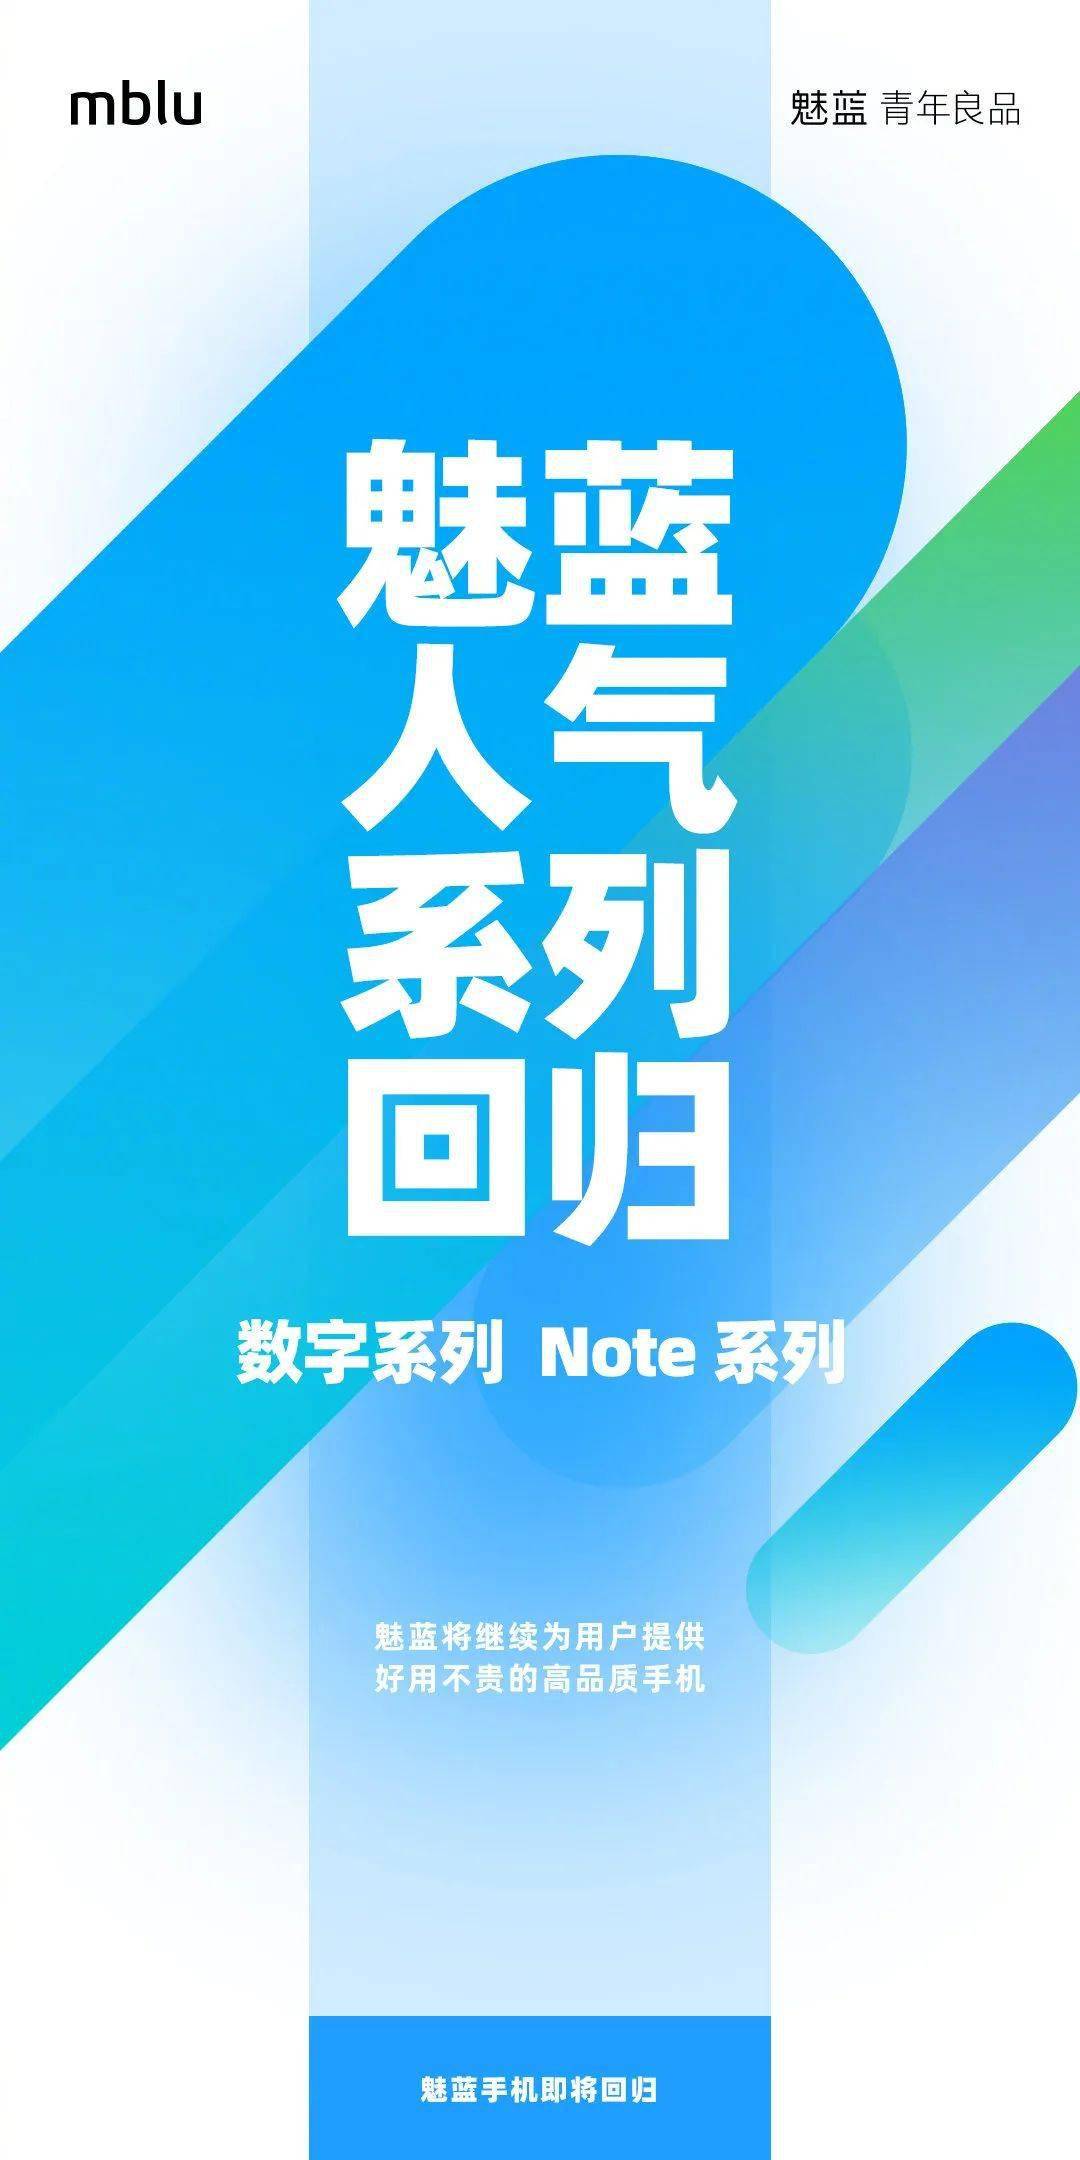 Note|【品牌】魅蓝：数字系列 & Note系列手机将陆续回归 首款魅蓝10？